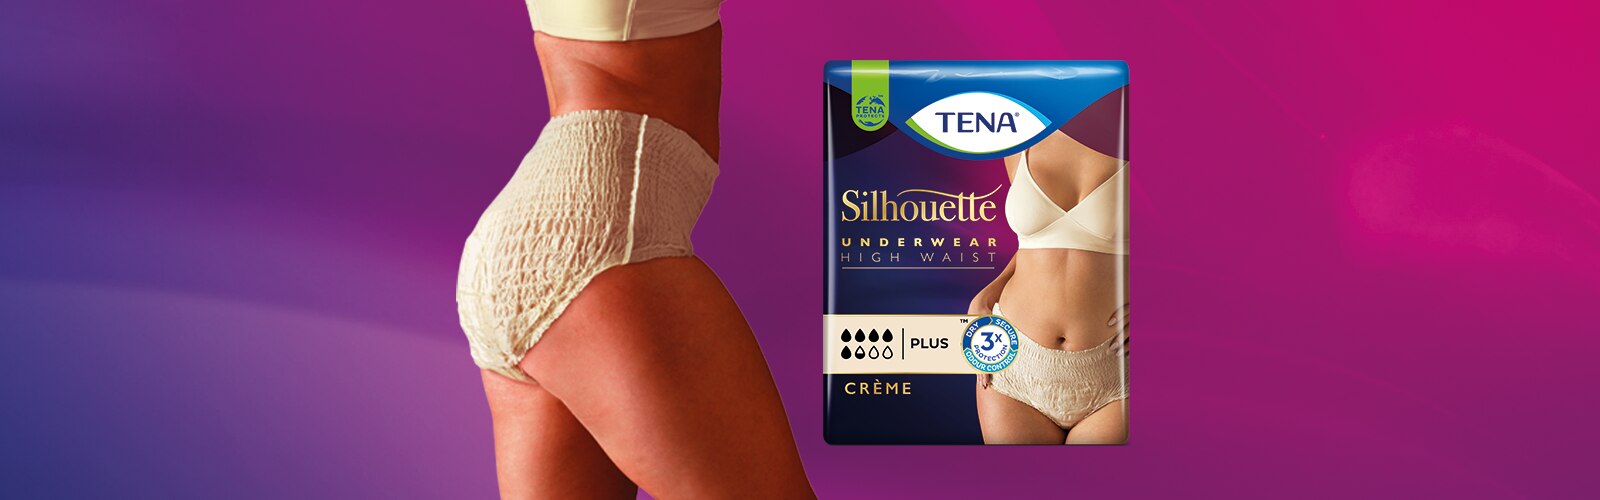 TENA Silhouette - Women's High Waist Incontinence Underwear in